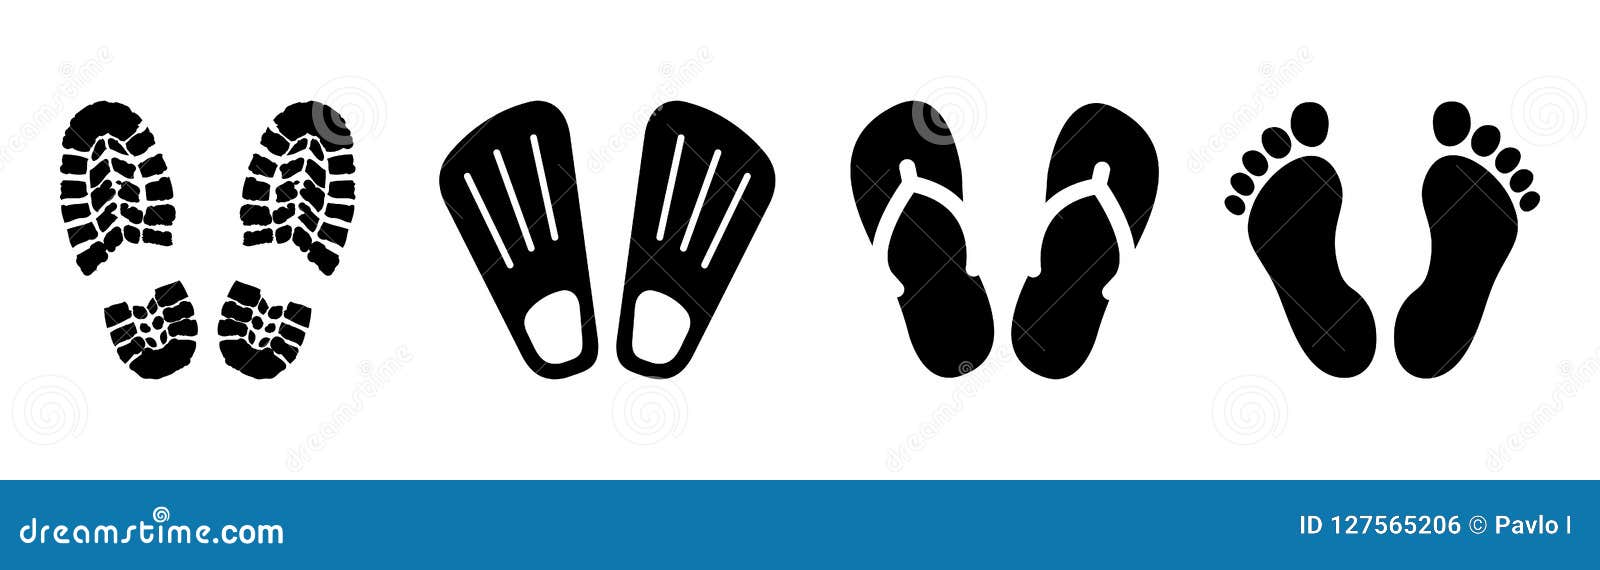 set shoeprints, barefoot, flutter - 